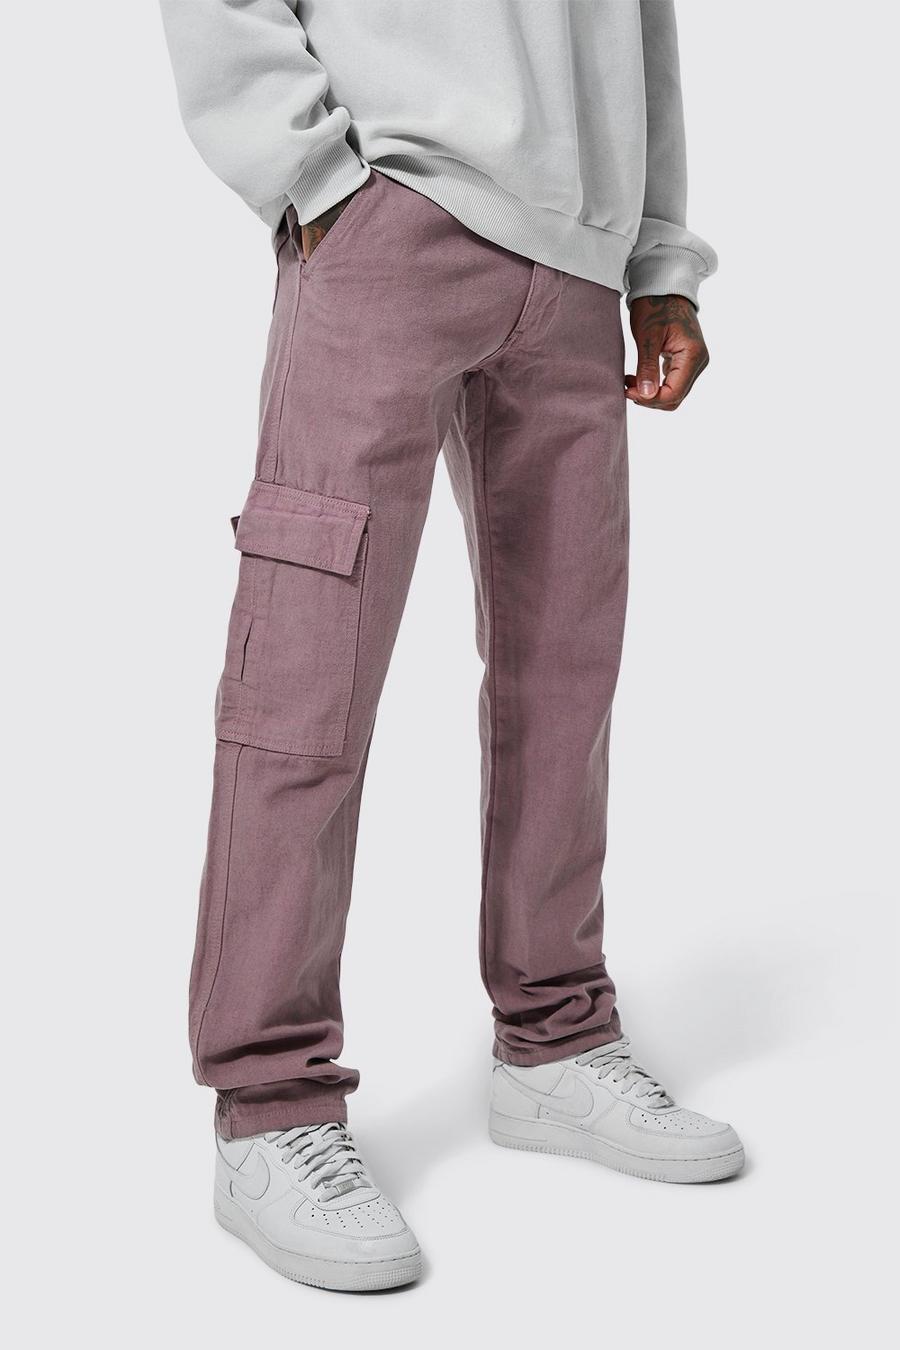 סגלגל purple מכנסי דגמ'ח בגזרה ישרה עם אפקט נערם ורצועת מותניים מקובעת